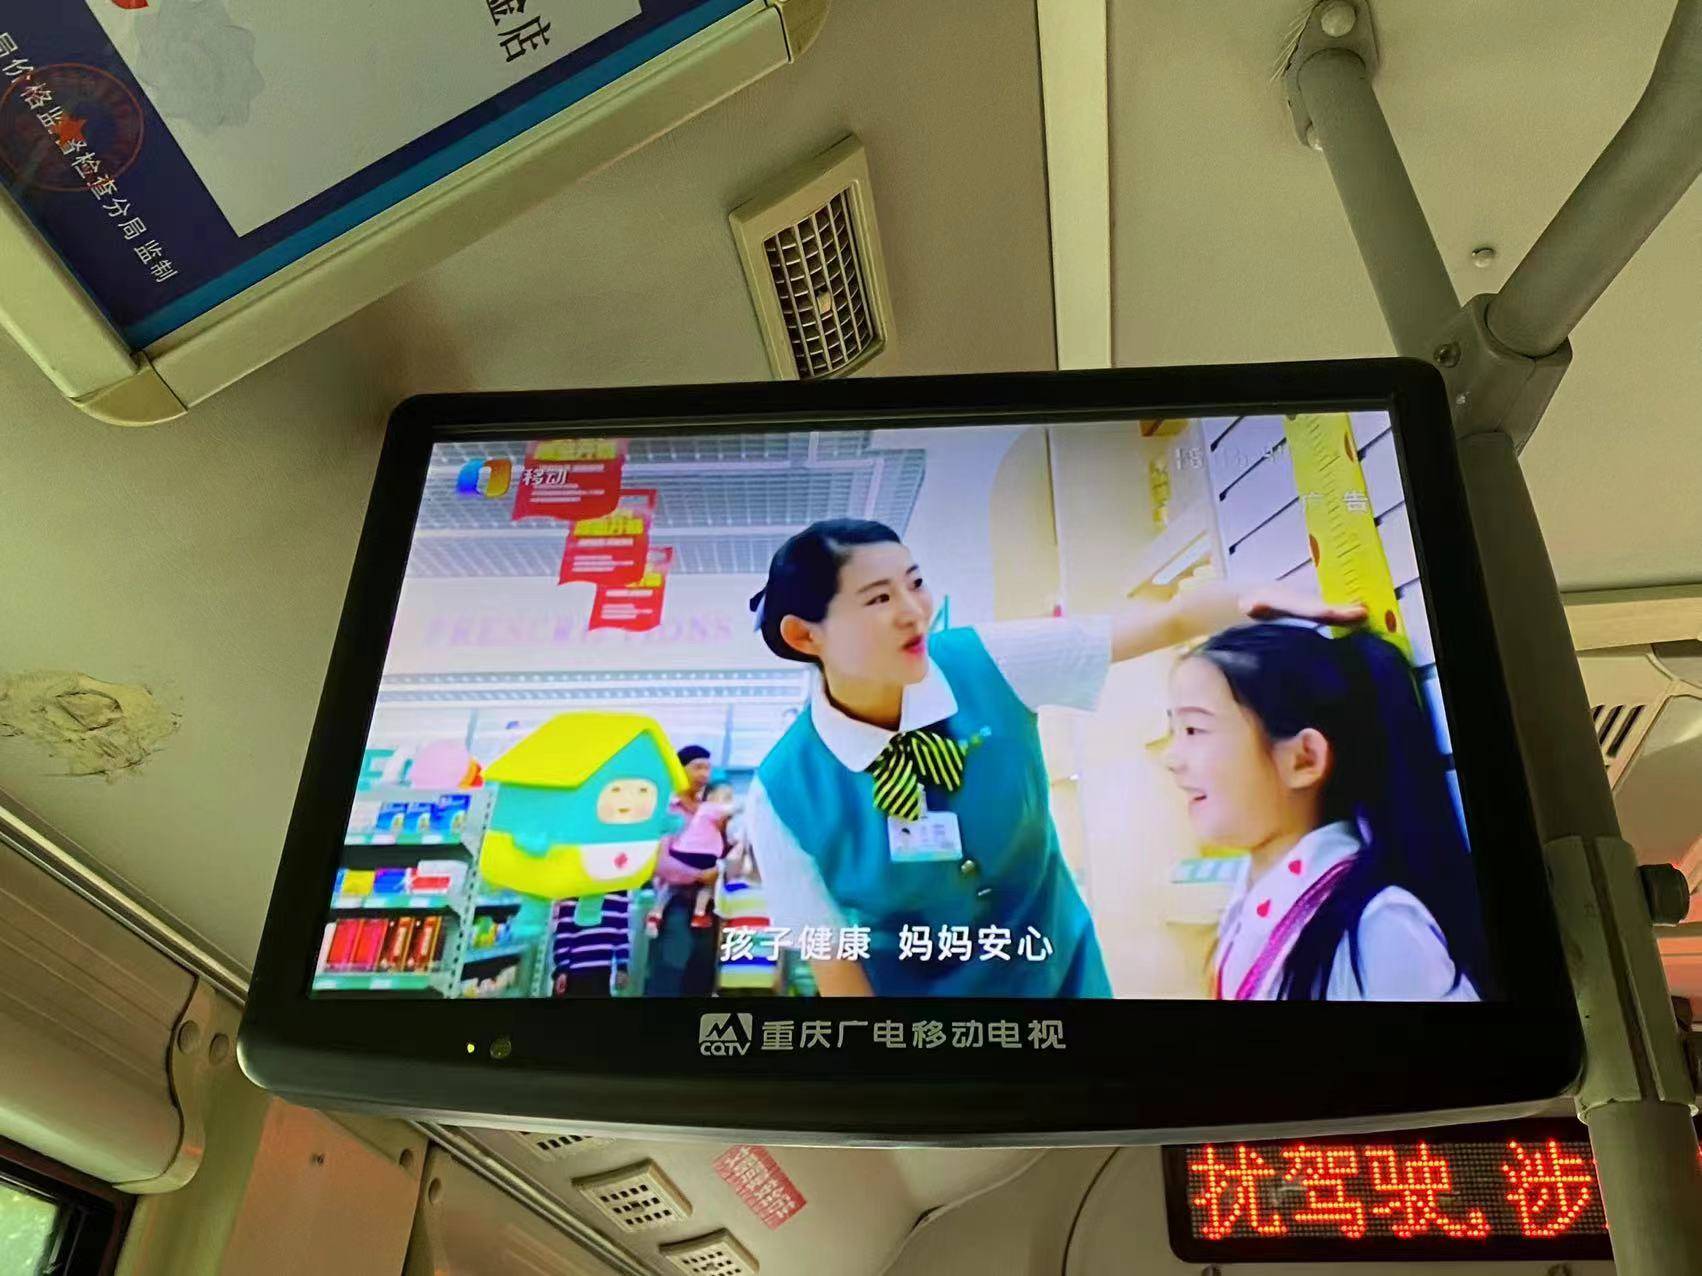 重庆健之佳药房投放重庆广电移动电视广告一,重庆公交车视频广告特点1